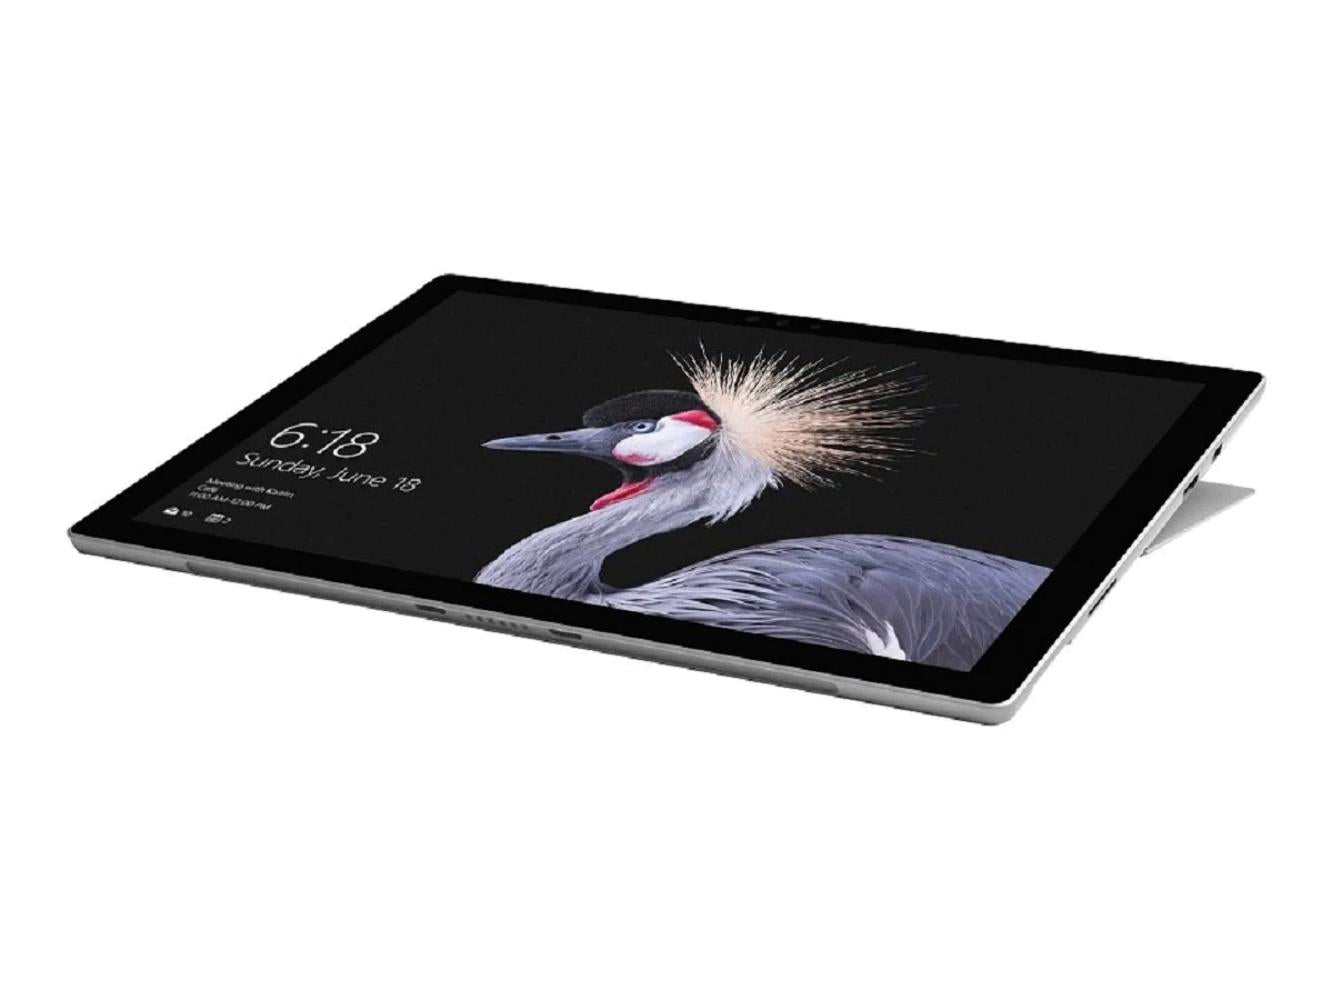 Microsoft Surface Pro 5 Intel Core i5-7300U 8GB DDR4 256GB SSD 